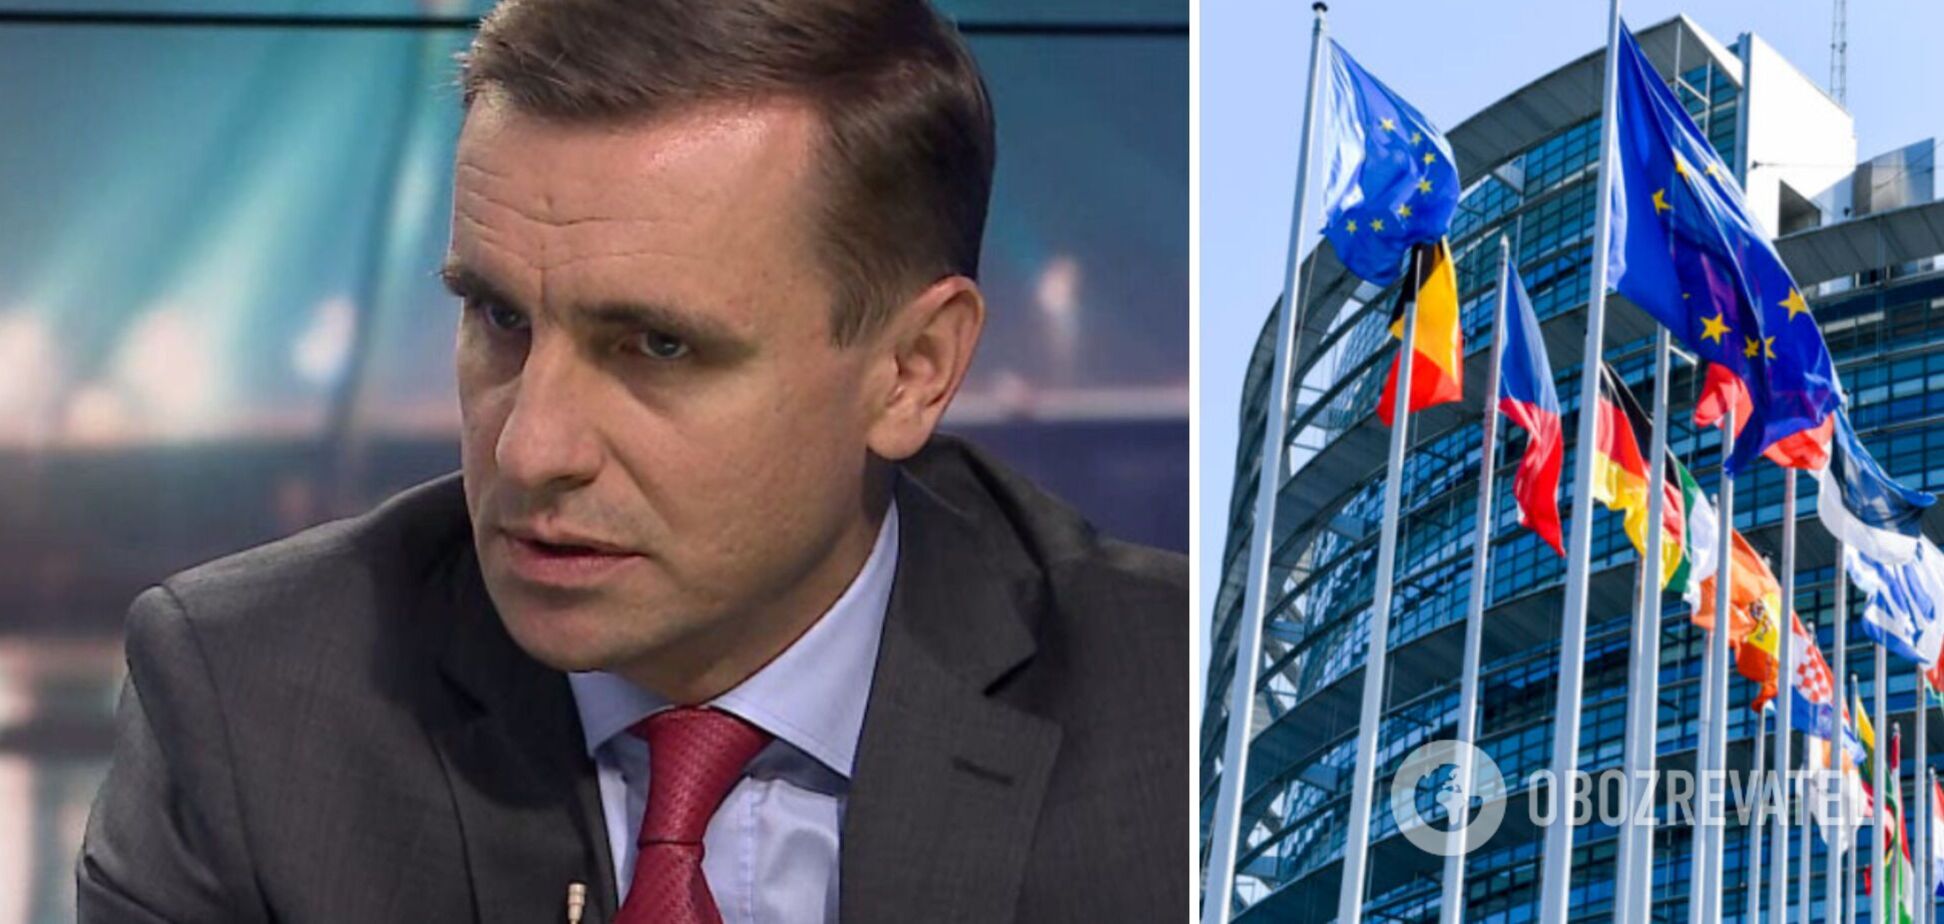 'Европейцы хотят видеть демократический парламент, верховенство права и свободу слова': дипломат рассказал об условиях макрофина от ЕС